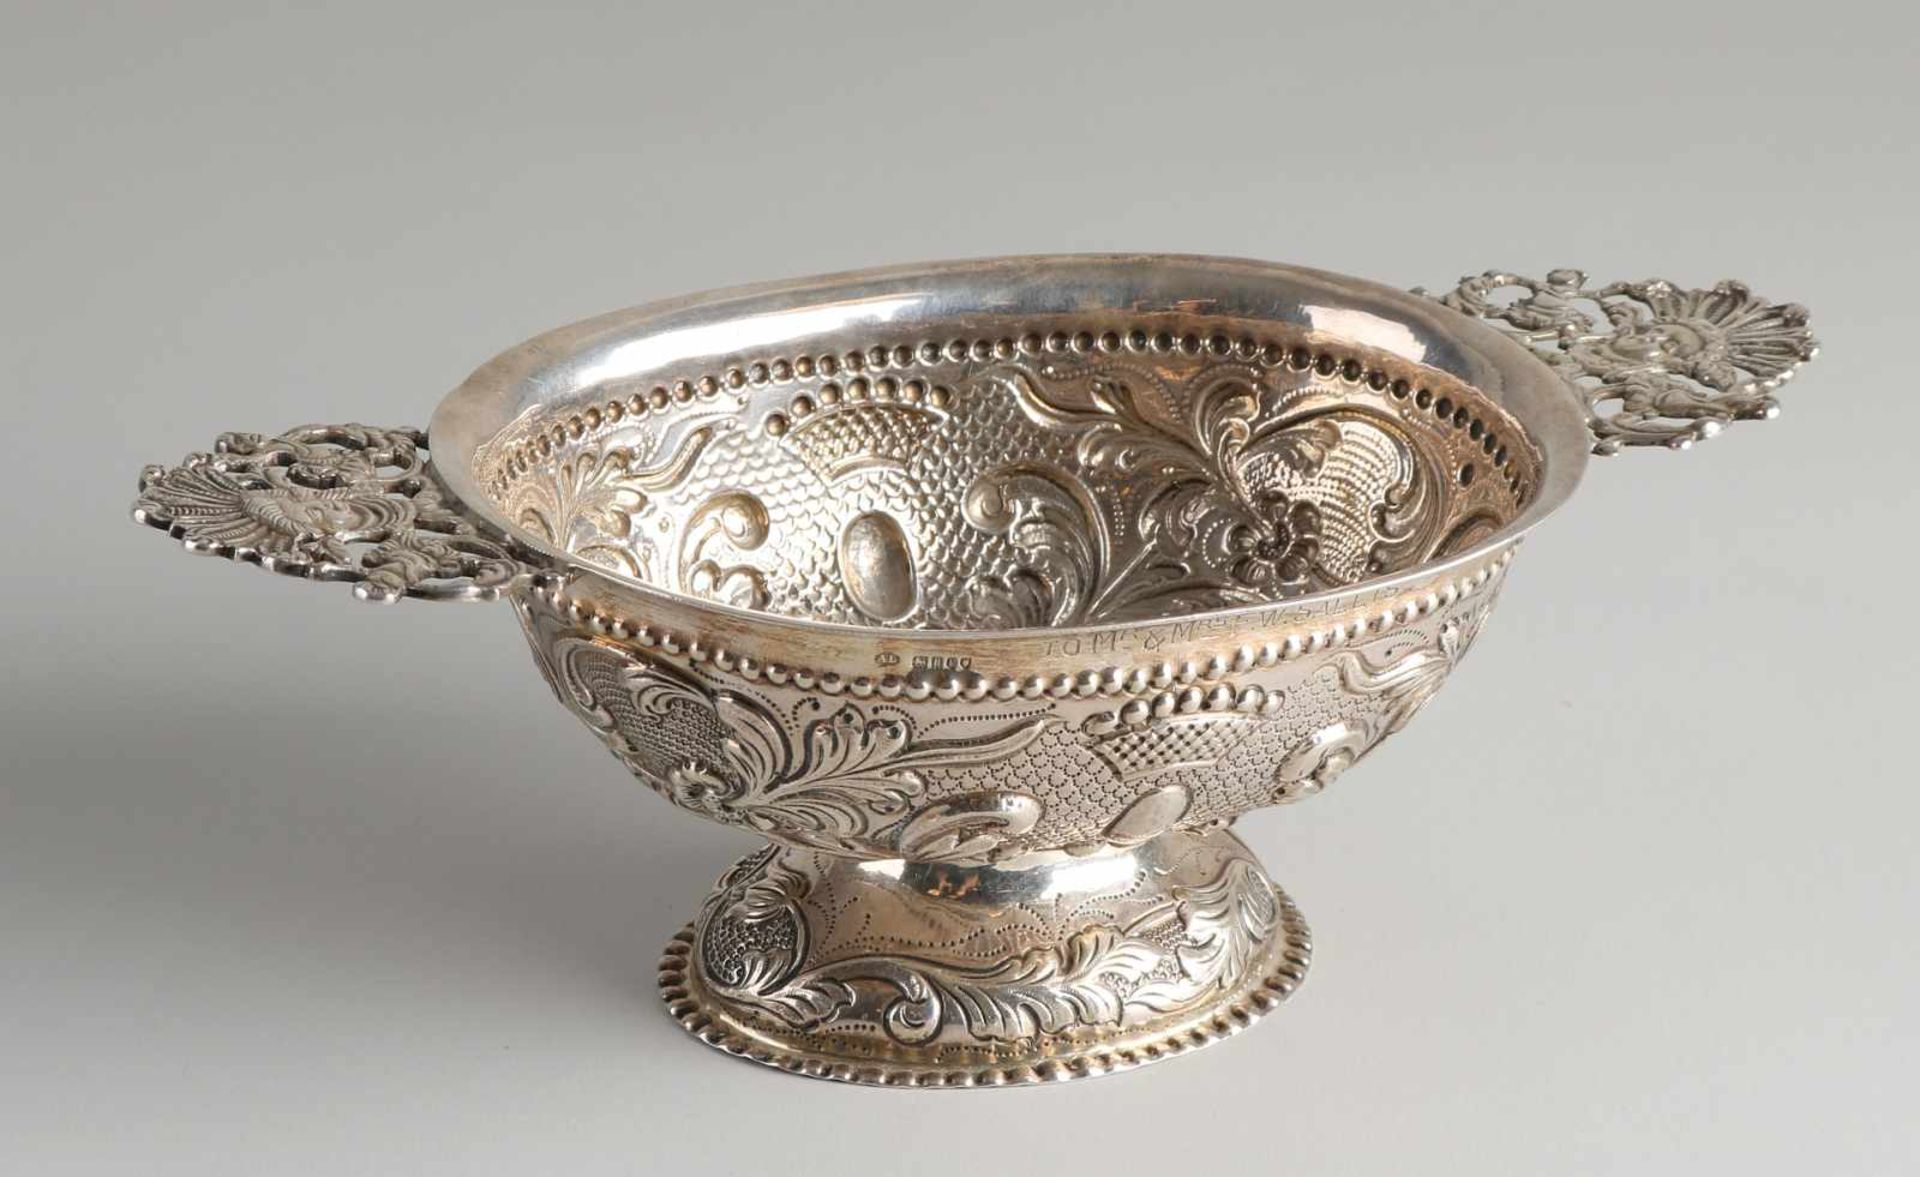 Silberne Brandyschale, 925/000, verziert mit Locken, Blumendekor und Kronen, auf ovalem Boden mit